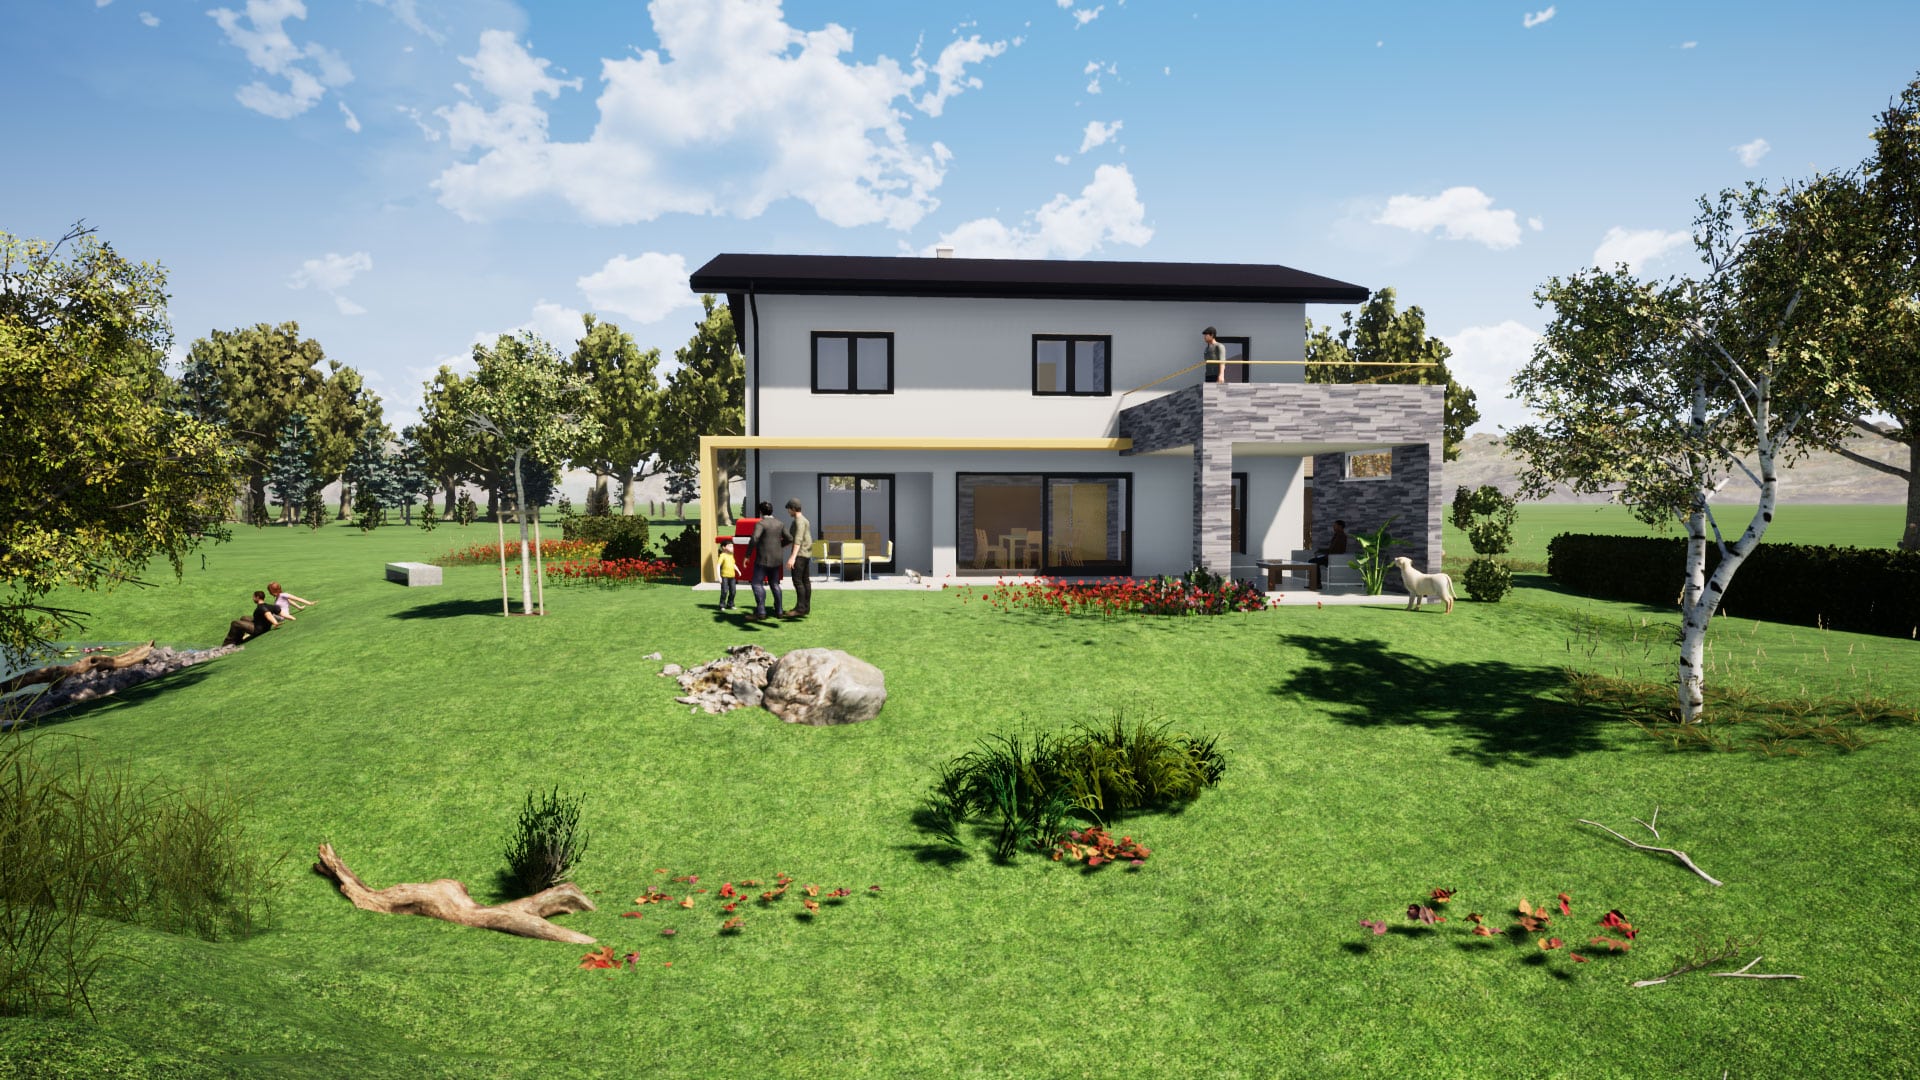 Bauplanung, Baubegleitung 3D-Visualisierung und Baukoordination via planco GmbH für ein modernes Einfamilienhaus mit Satteldach, überdachter Terrasse mit inkludiertem Balkon.